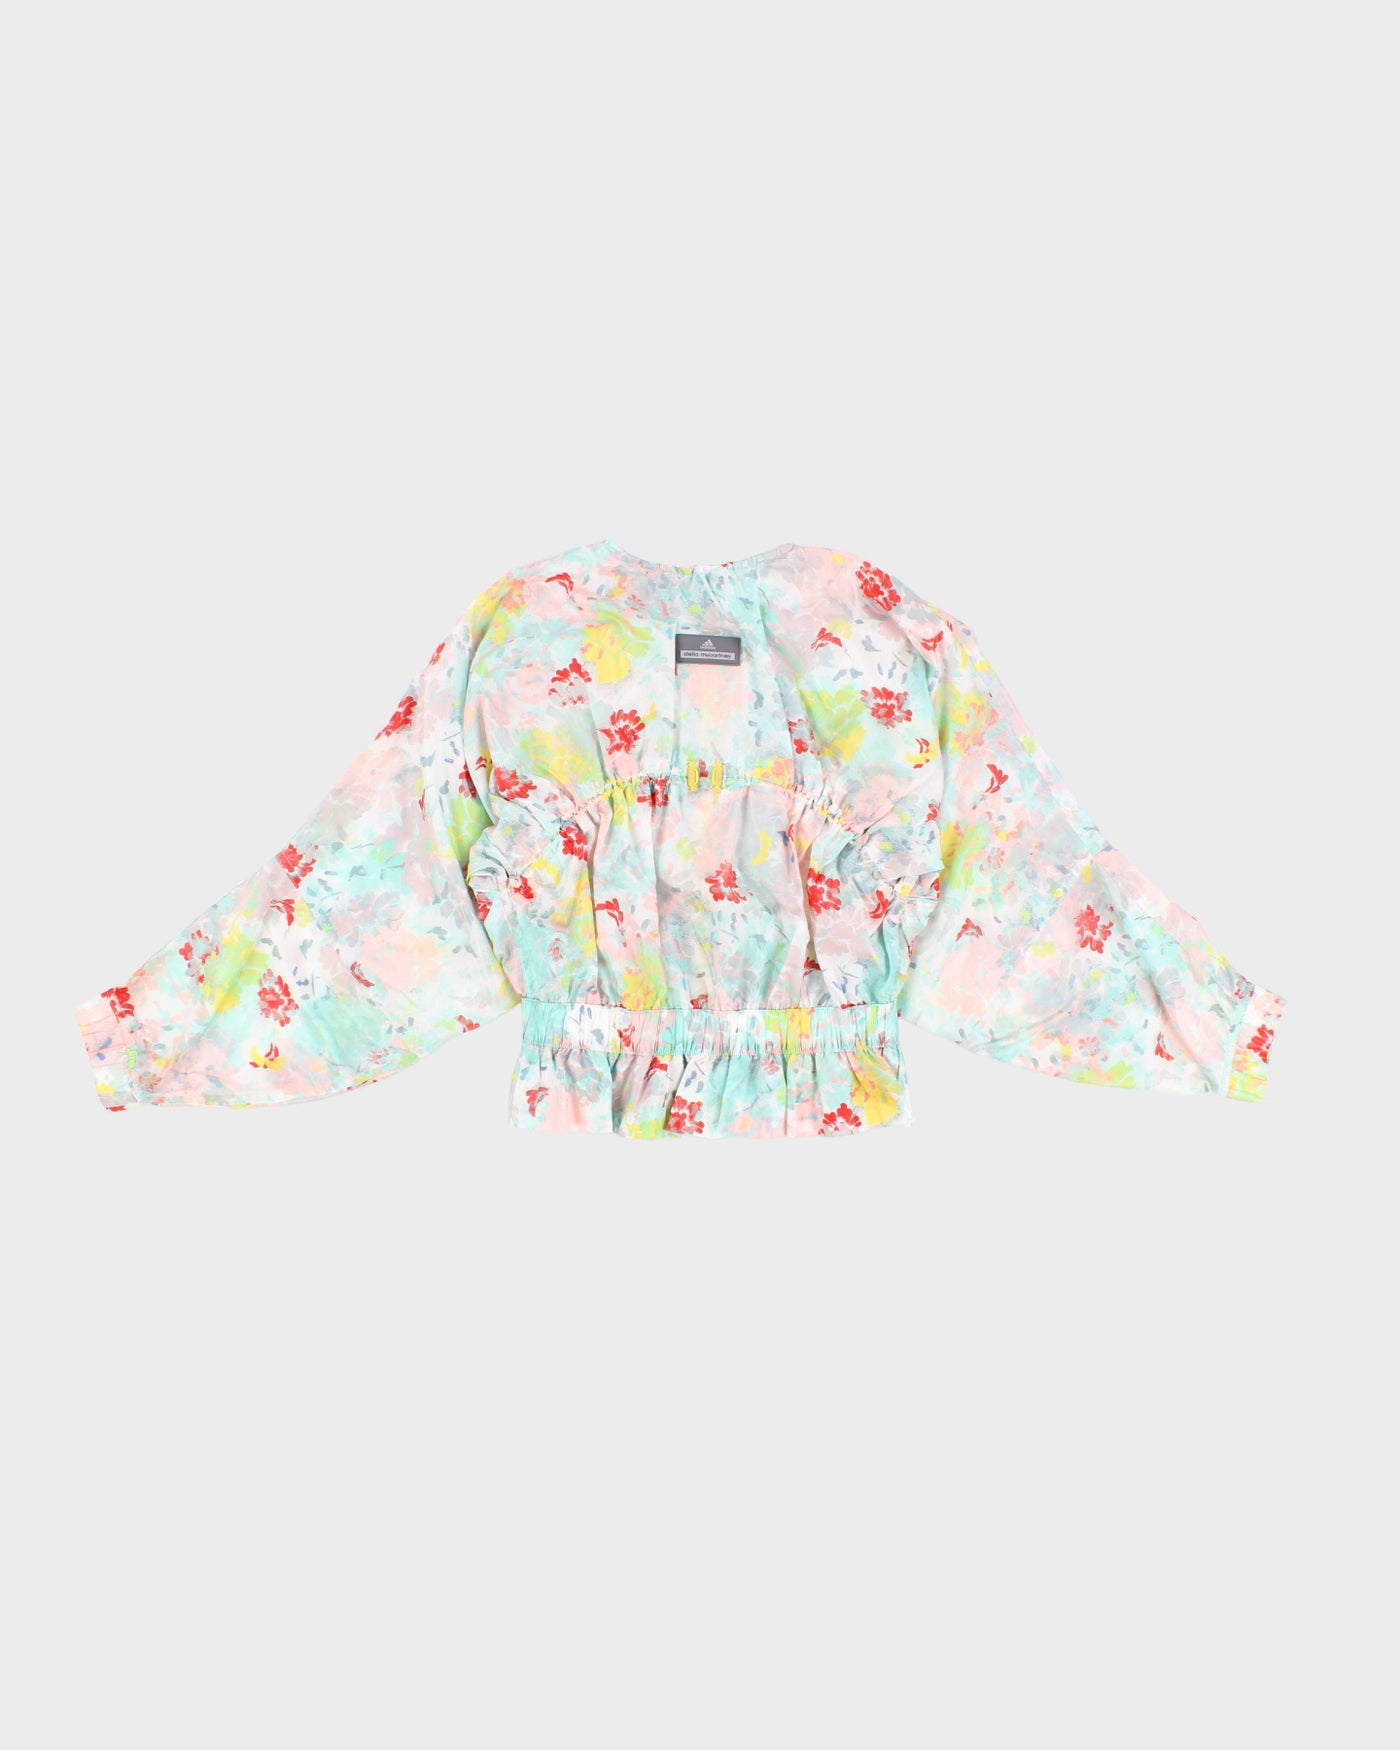 Stella McCartney x Adidas Floral Jacket - M